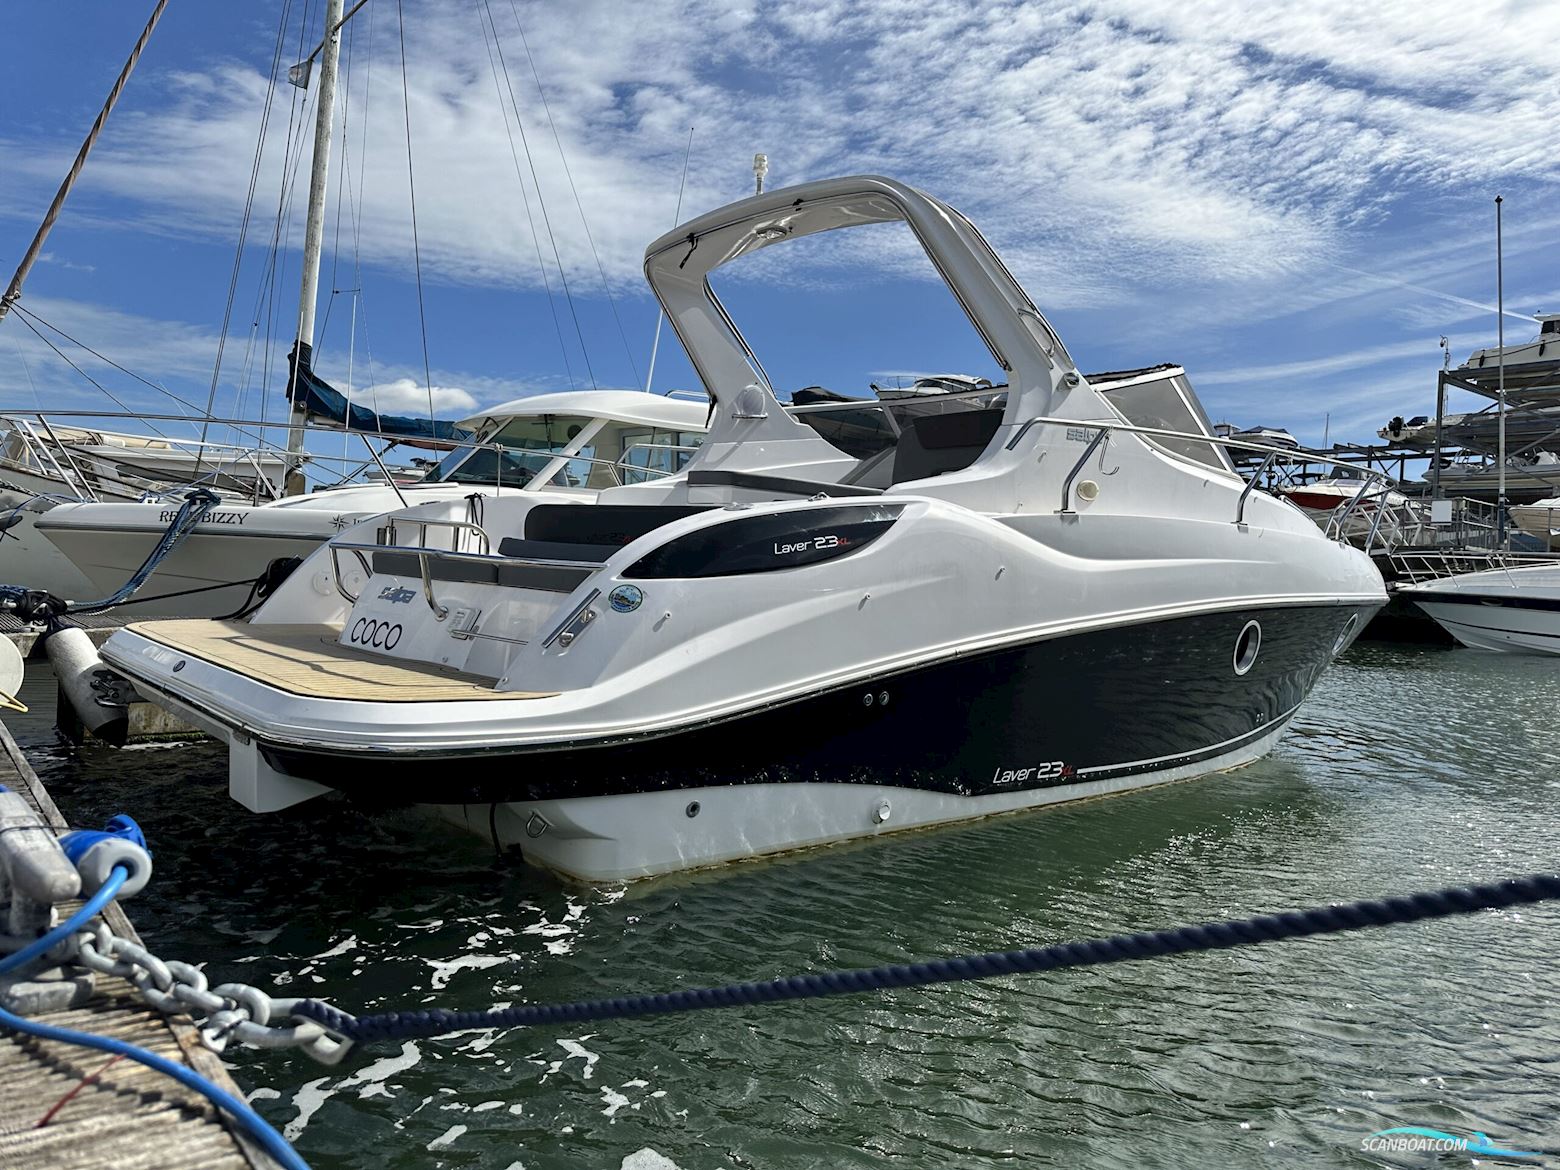 Salpa 23XL Motorbåt 2020, med Mercruiser motor, England